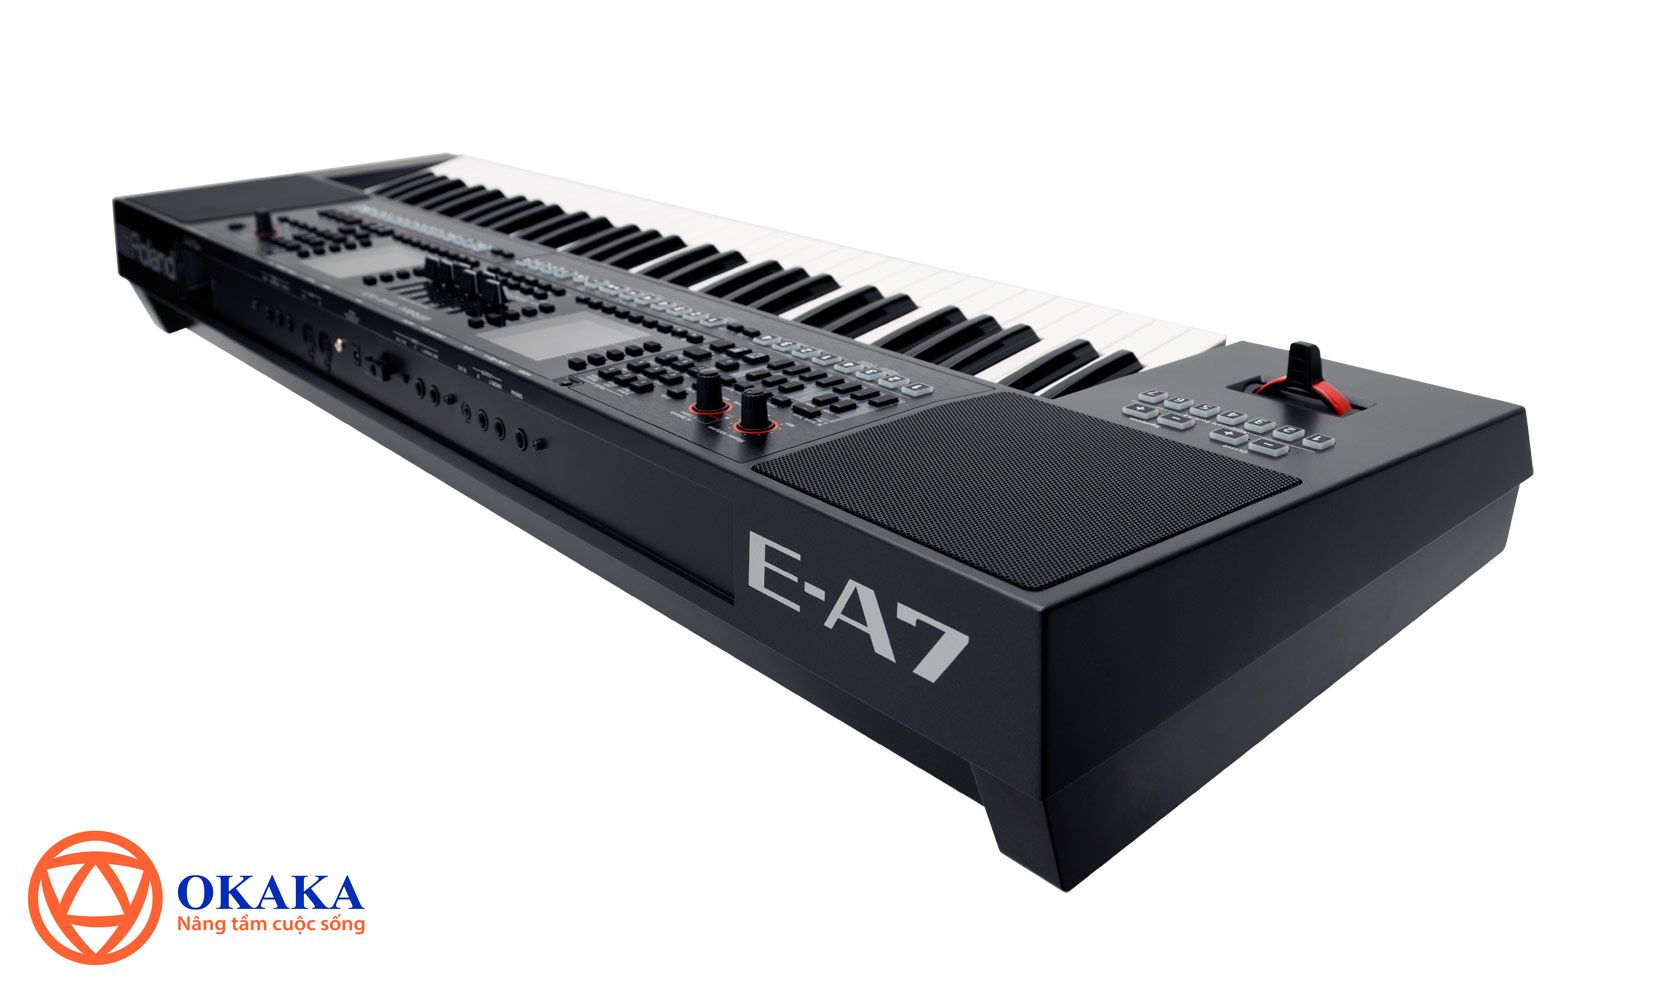  Đàn Organ Roland E-A7, model mới nhất của Roland được rất nhiều nhạc công nổi tiếng thế giới đánh giá cao, rất đáng để bạn cân nhắc.